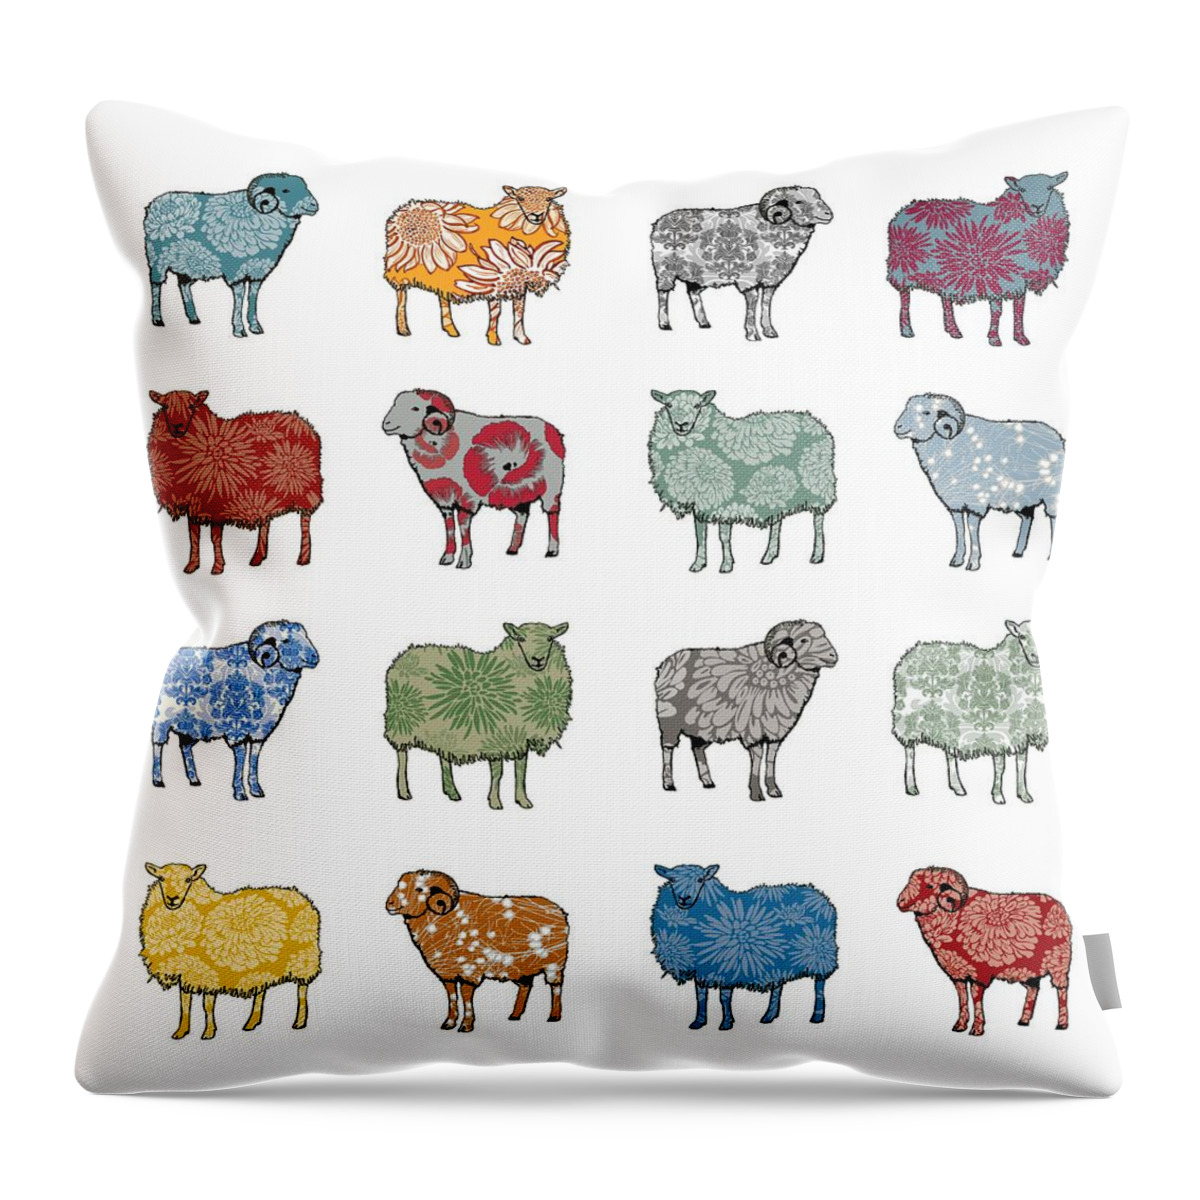 Sheep Throw Pillow featuring the digital art Baa Humbug by Sarah Hough